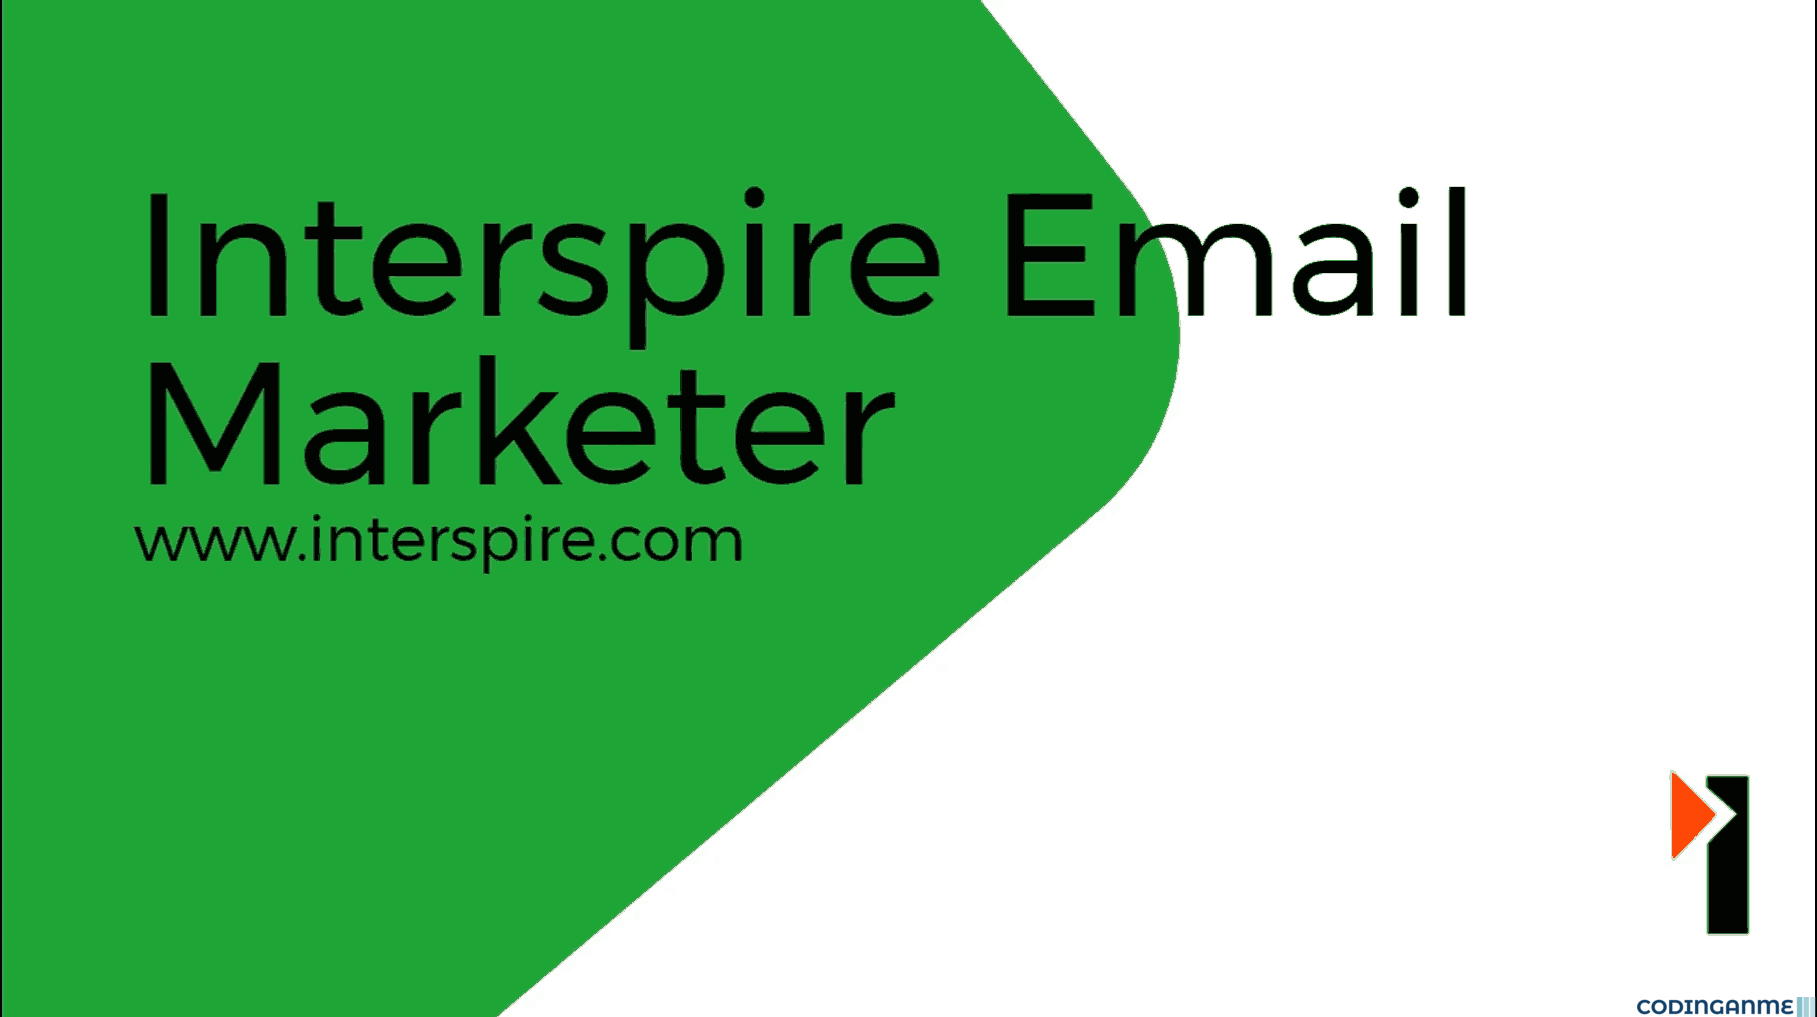 Interspire Email Marketer - Interspire